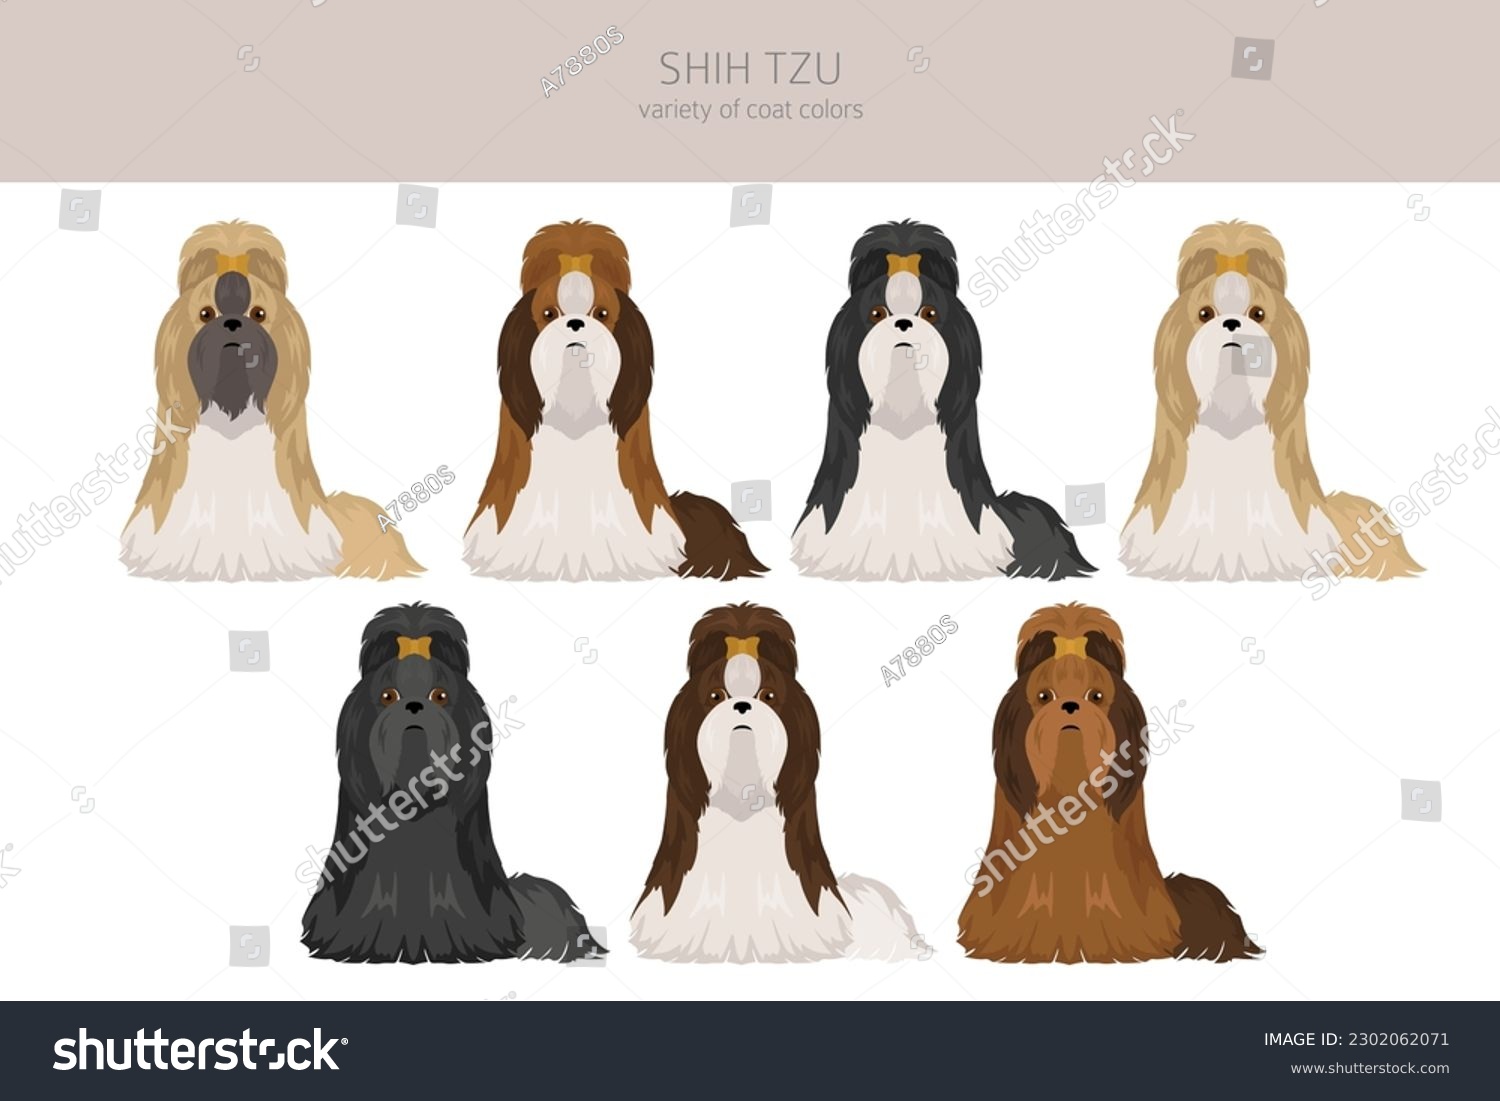 SVG of Shih Tzu poses, coat colors set.  Vector illustration svg